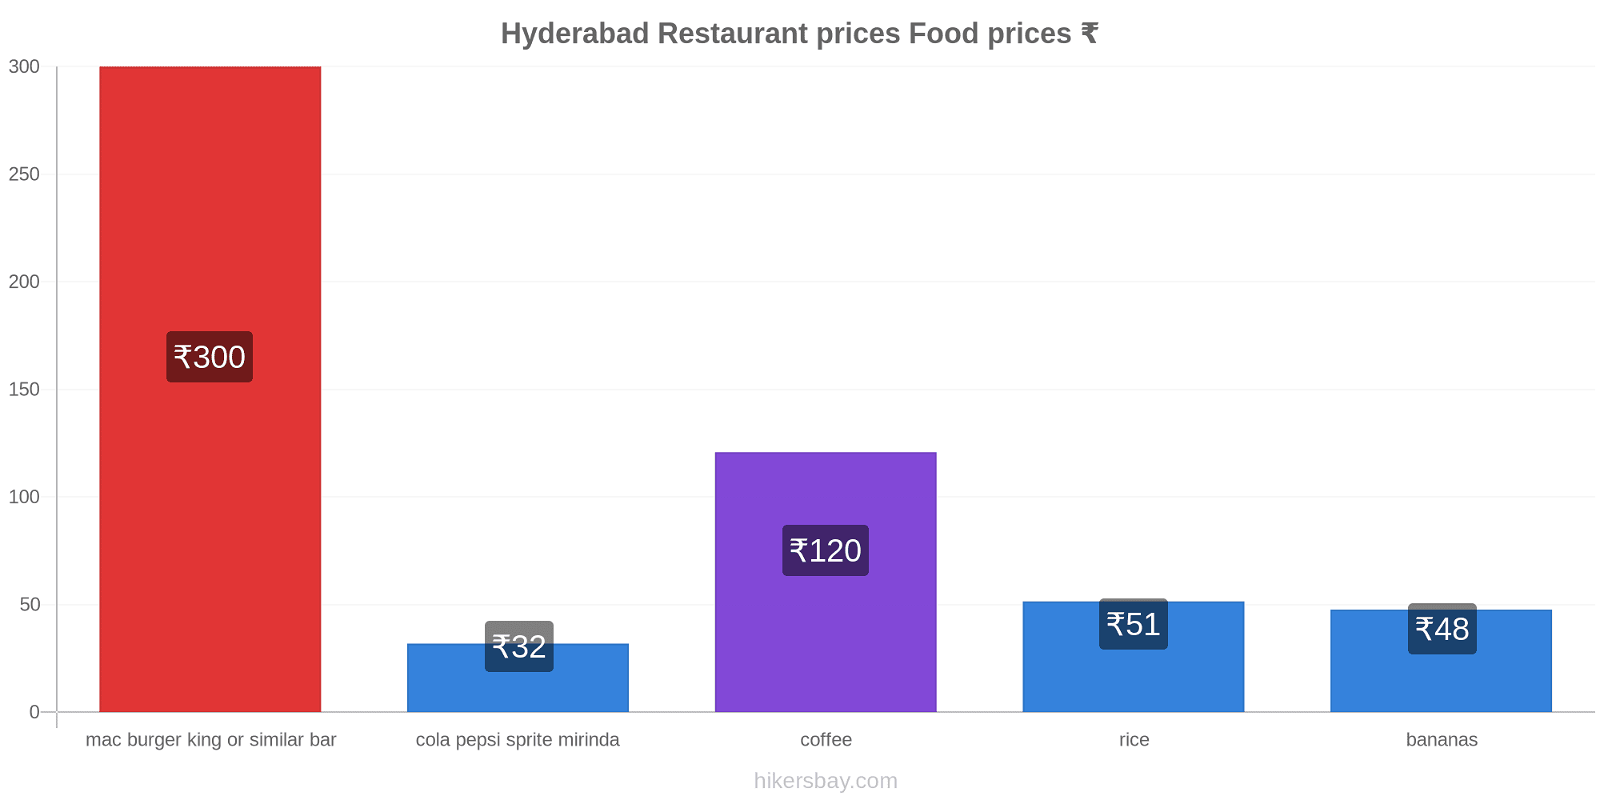 Hyderabad price changes hikersbay.com